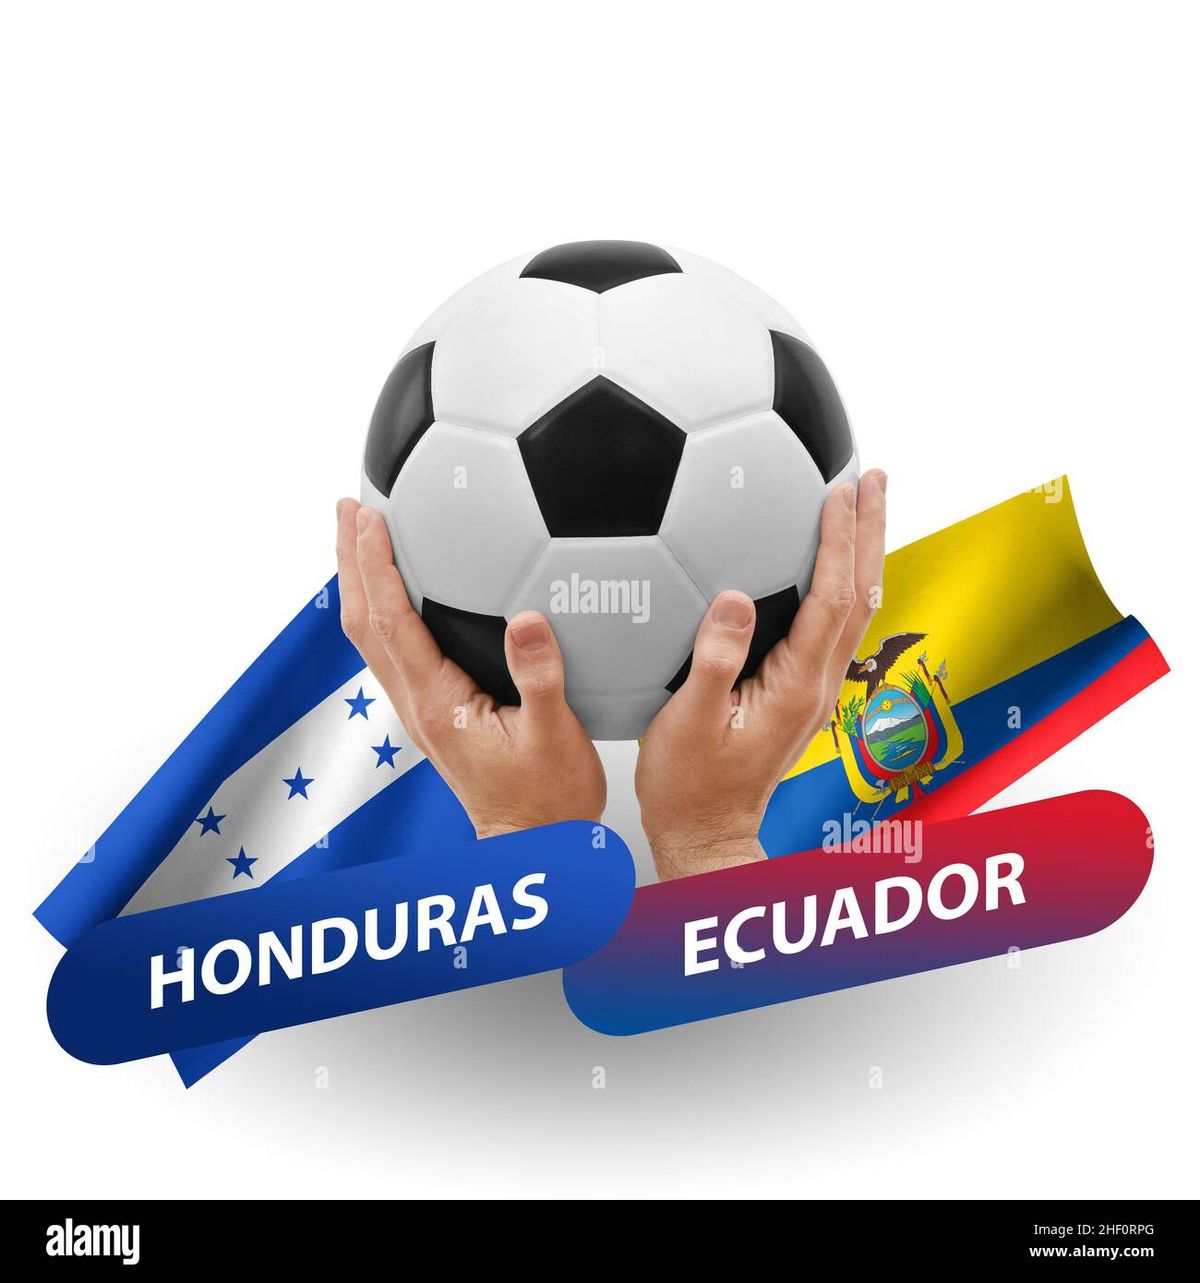 Ecuador National vs. Honduras National Soccer